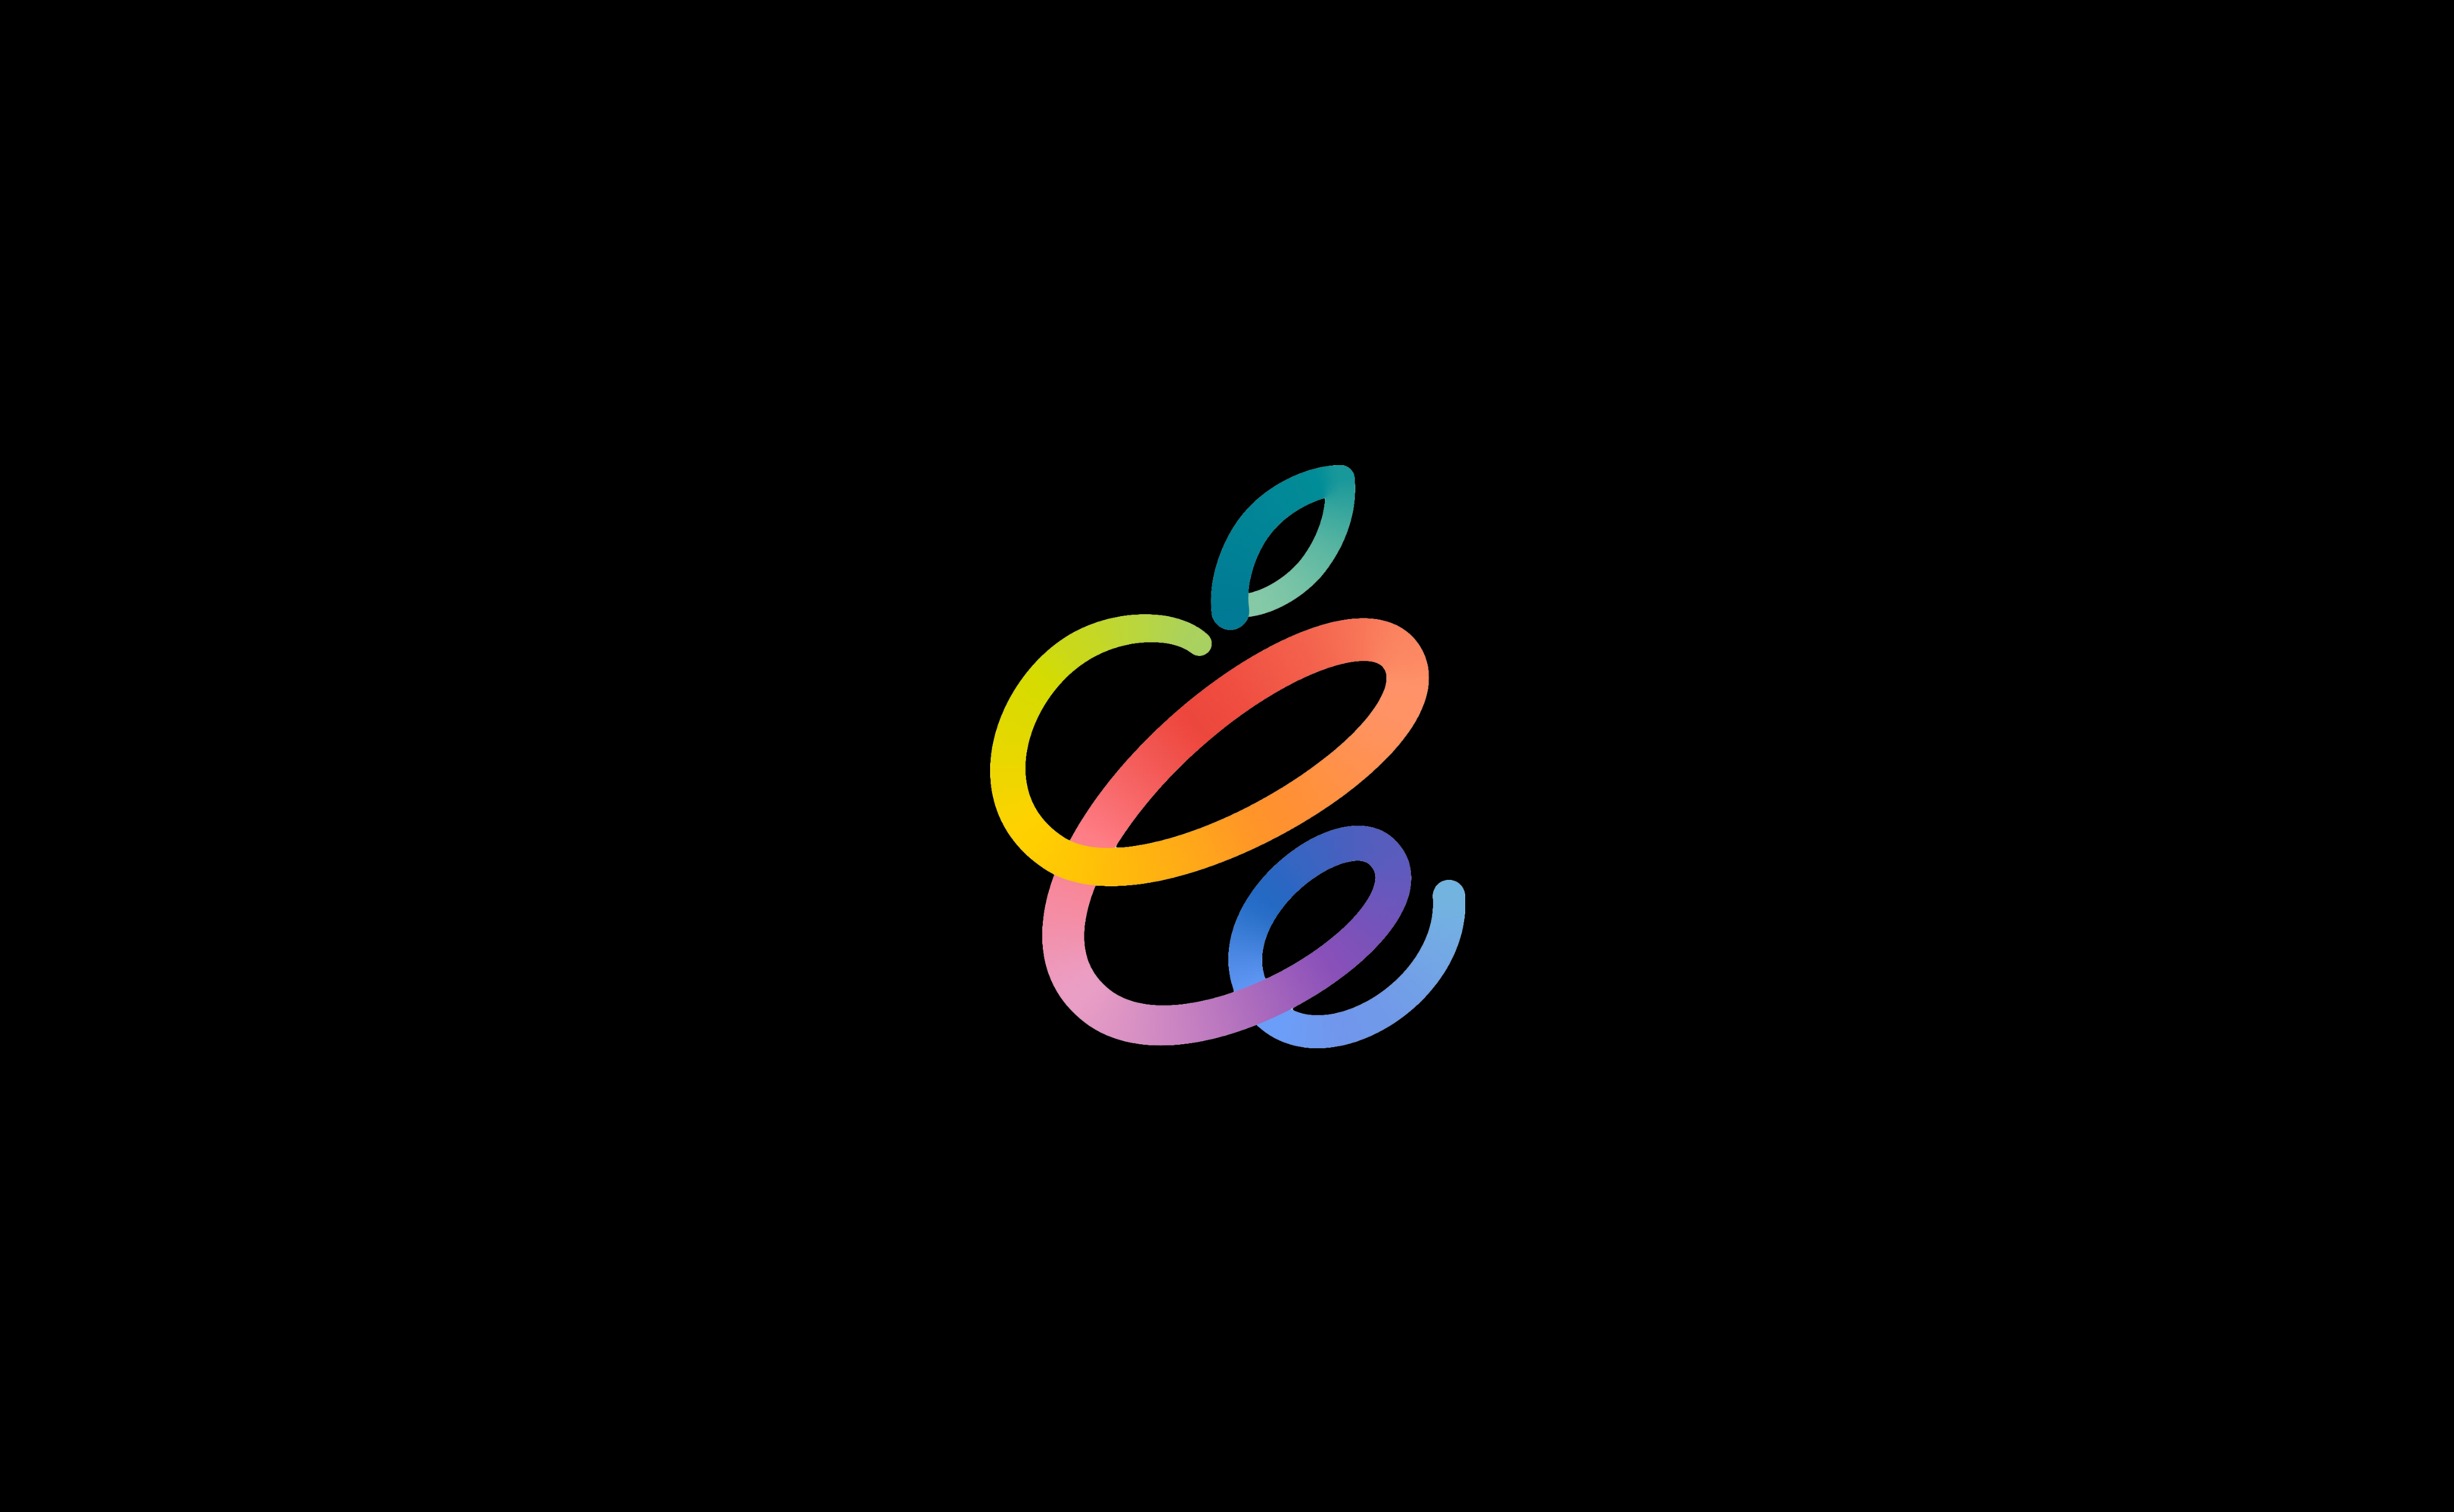 Apple شركة  14 أبريل 2021 0 تعليقات
AppleSpring Loaded: قم بتنزيل الخلفيات لجميع أجهزتك هنا!